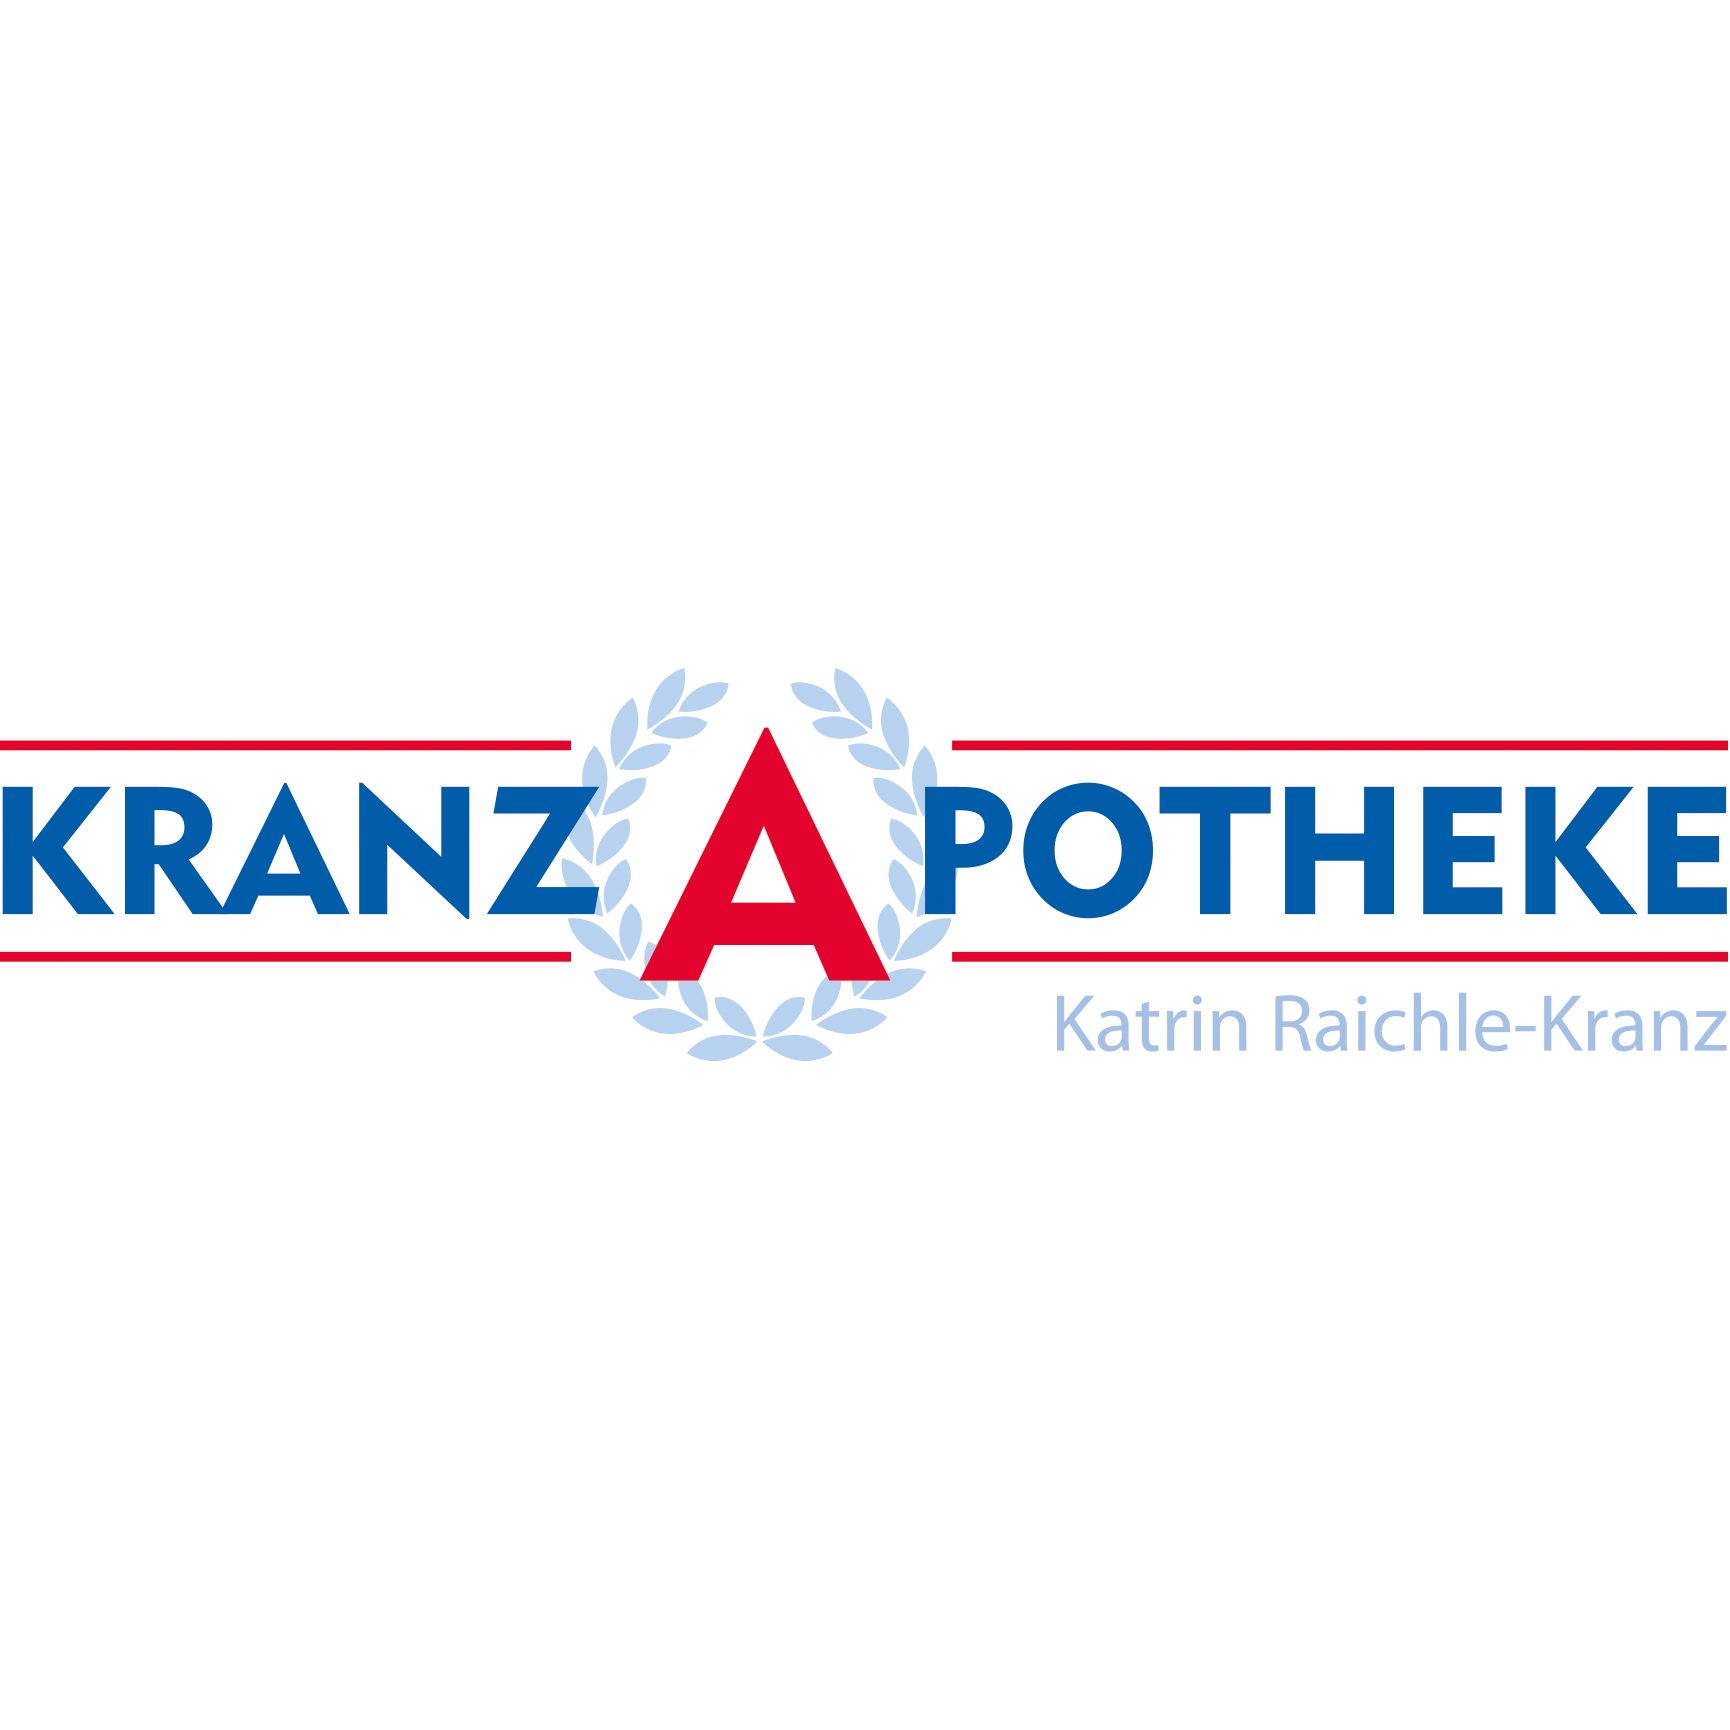 Kranz-Apotheke in Stade - Logo